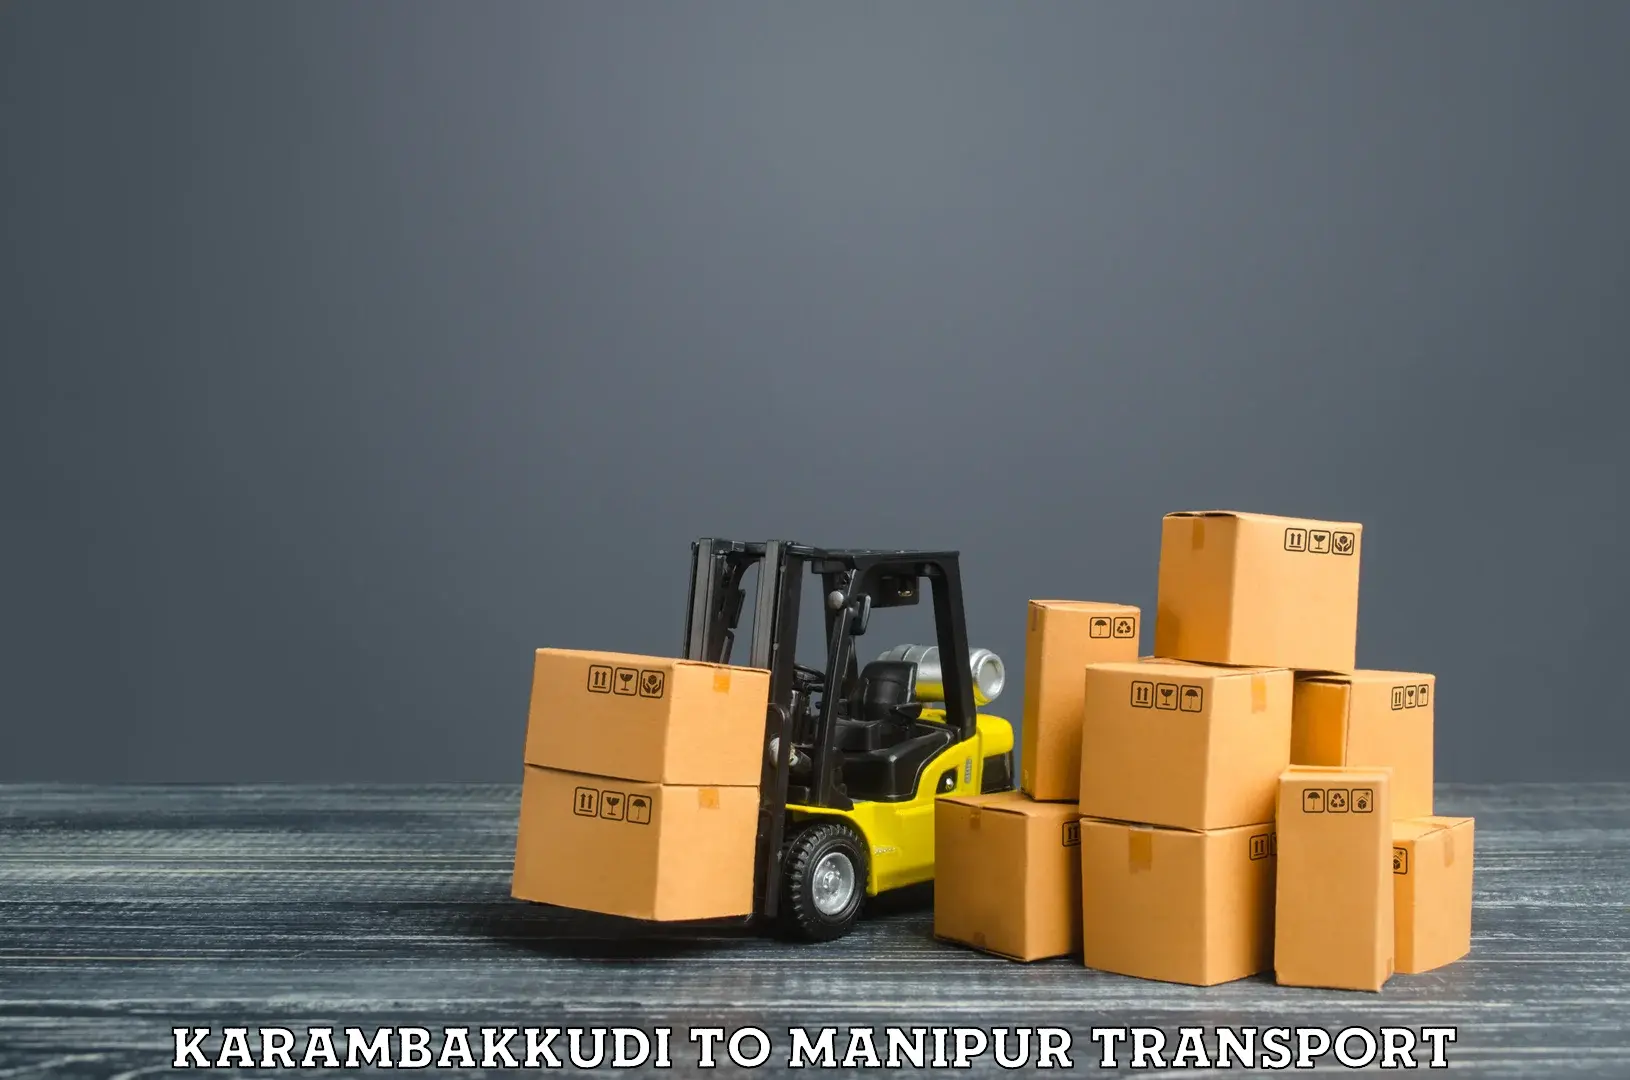 Road transport services Karambakkudi to NIT Manipur